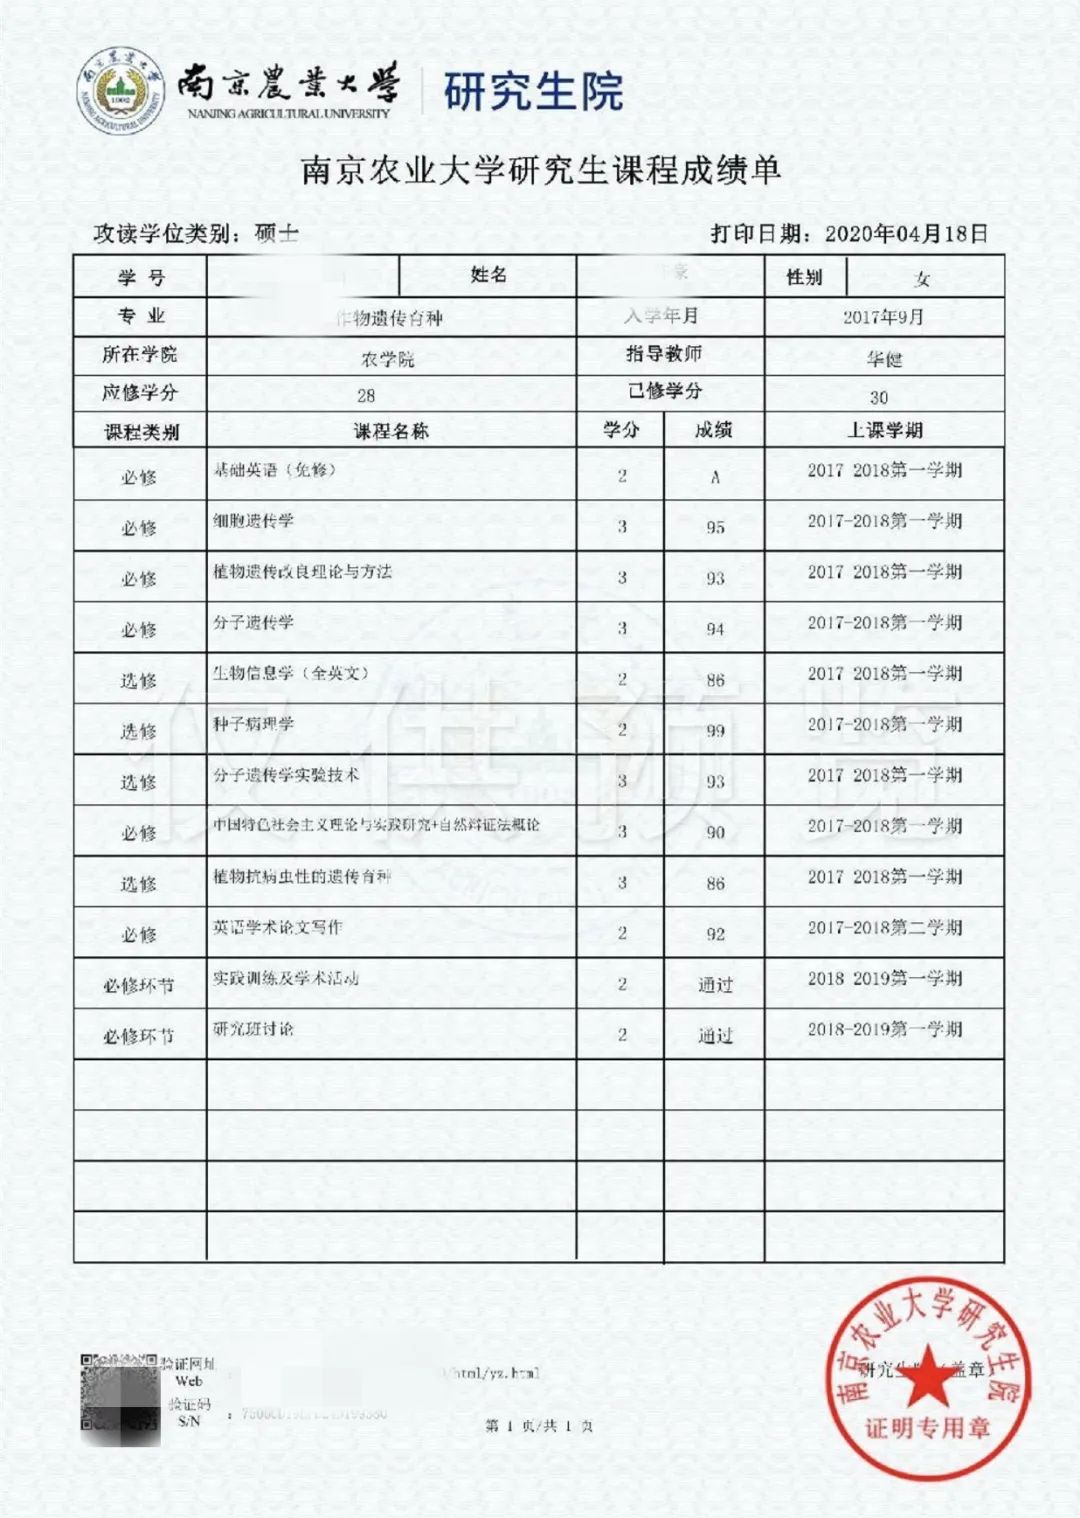 南京农业大学研究生院:在线办理可信电子成绩单来了 广州正脉教育